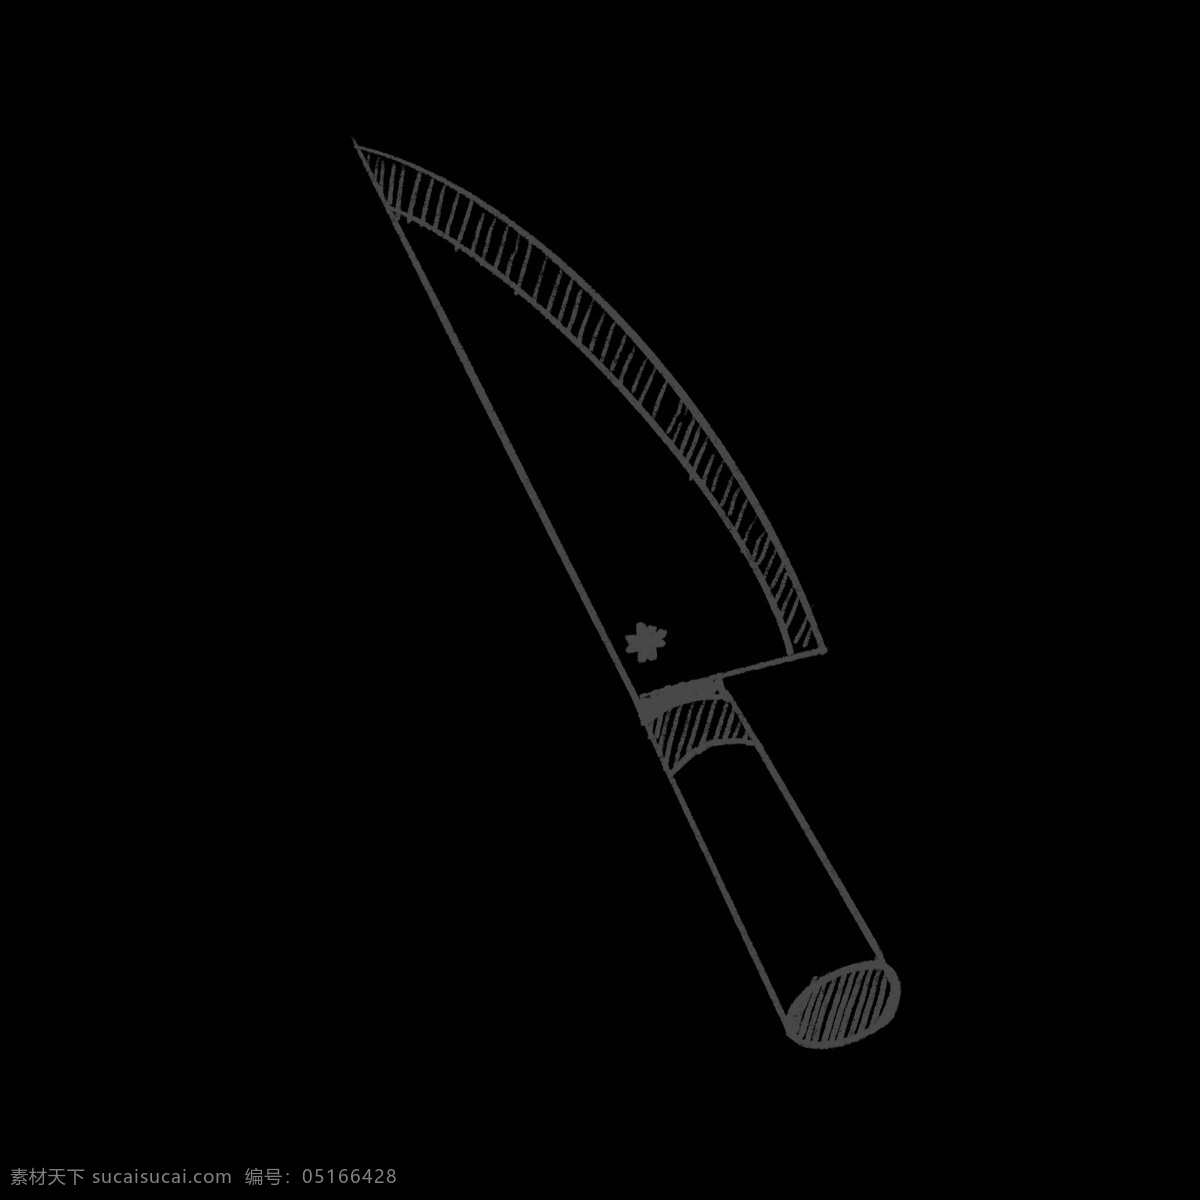 个性 黑白 锋利 水果刀 装饰 美观 视觉 造型 锋利水果刀 黑白手绘 手绘水果刀 创意水果刀